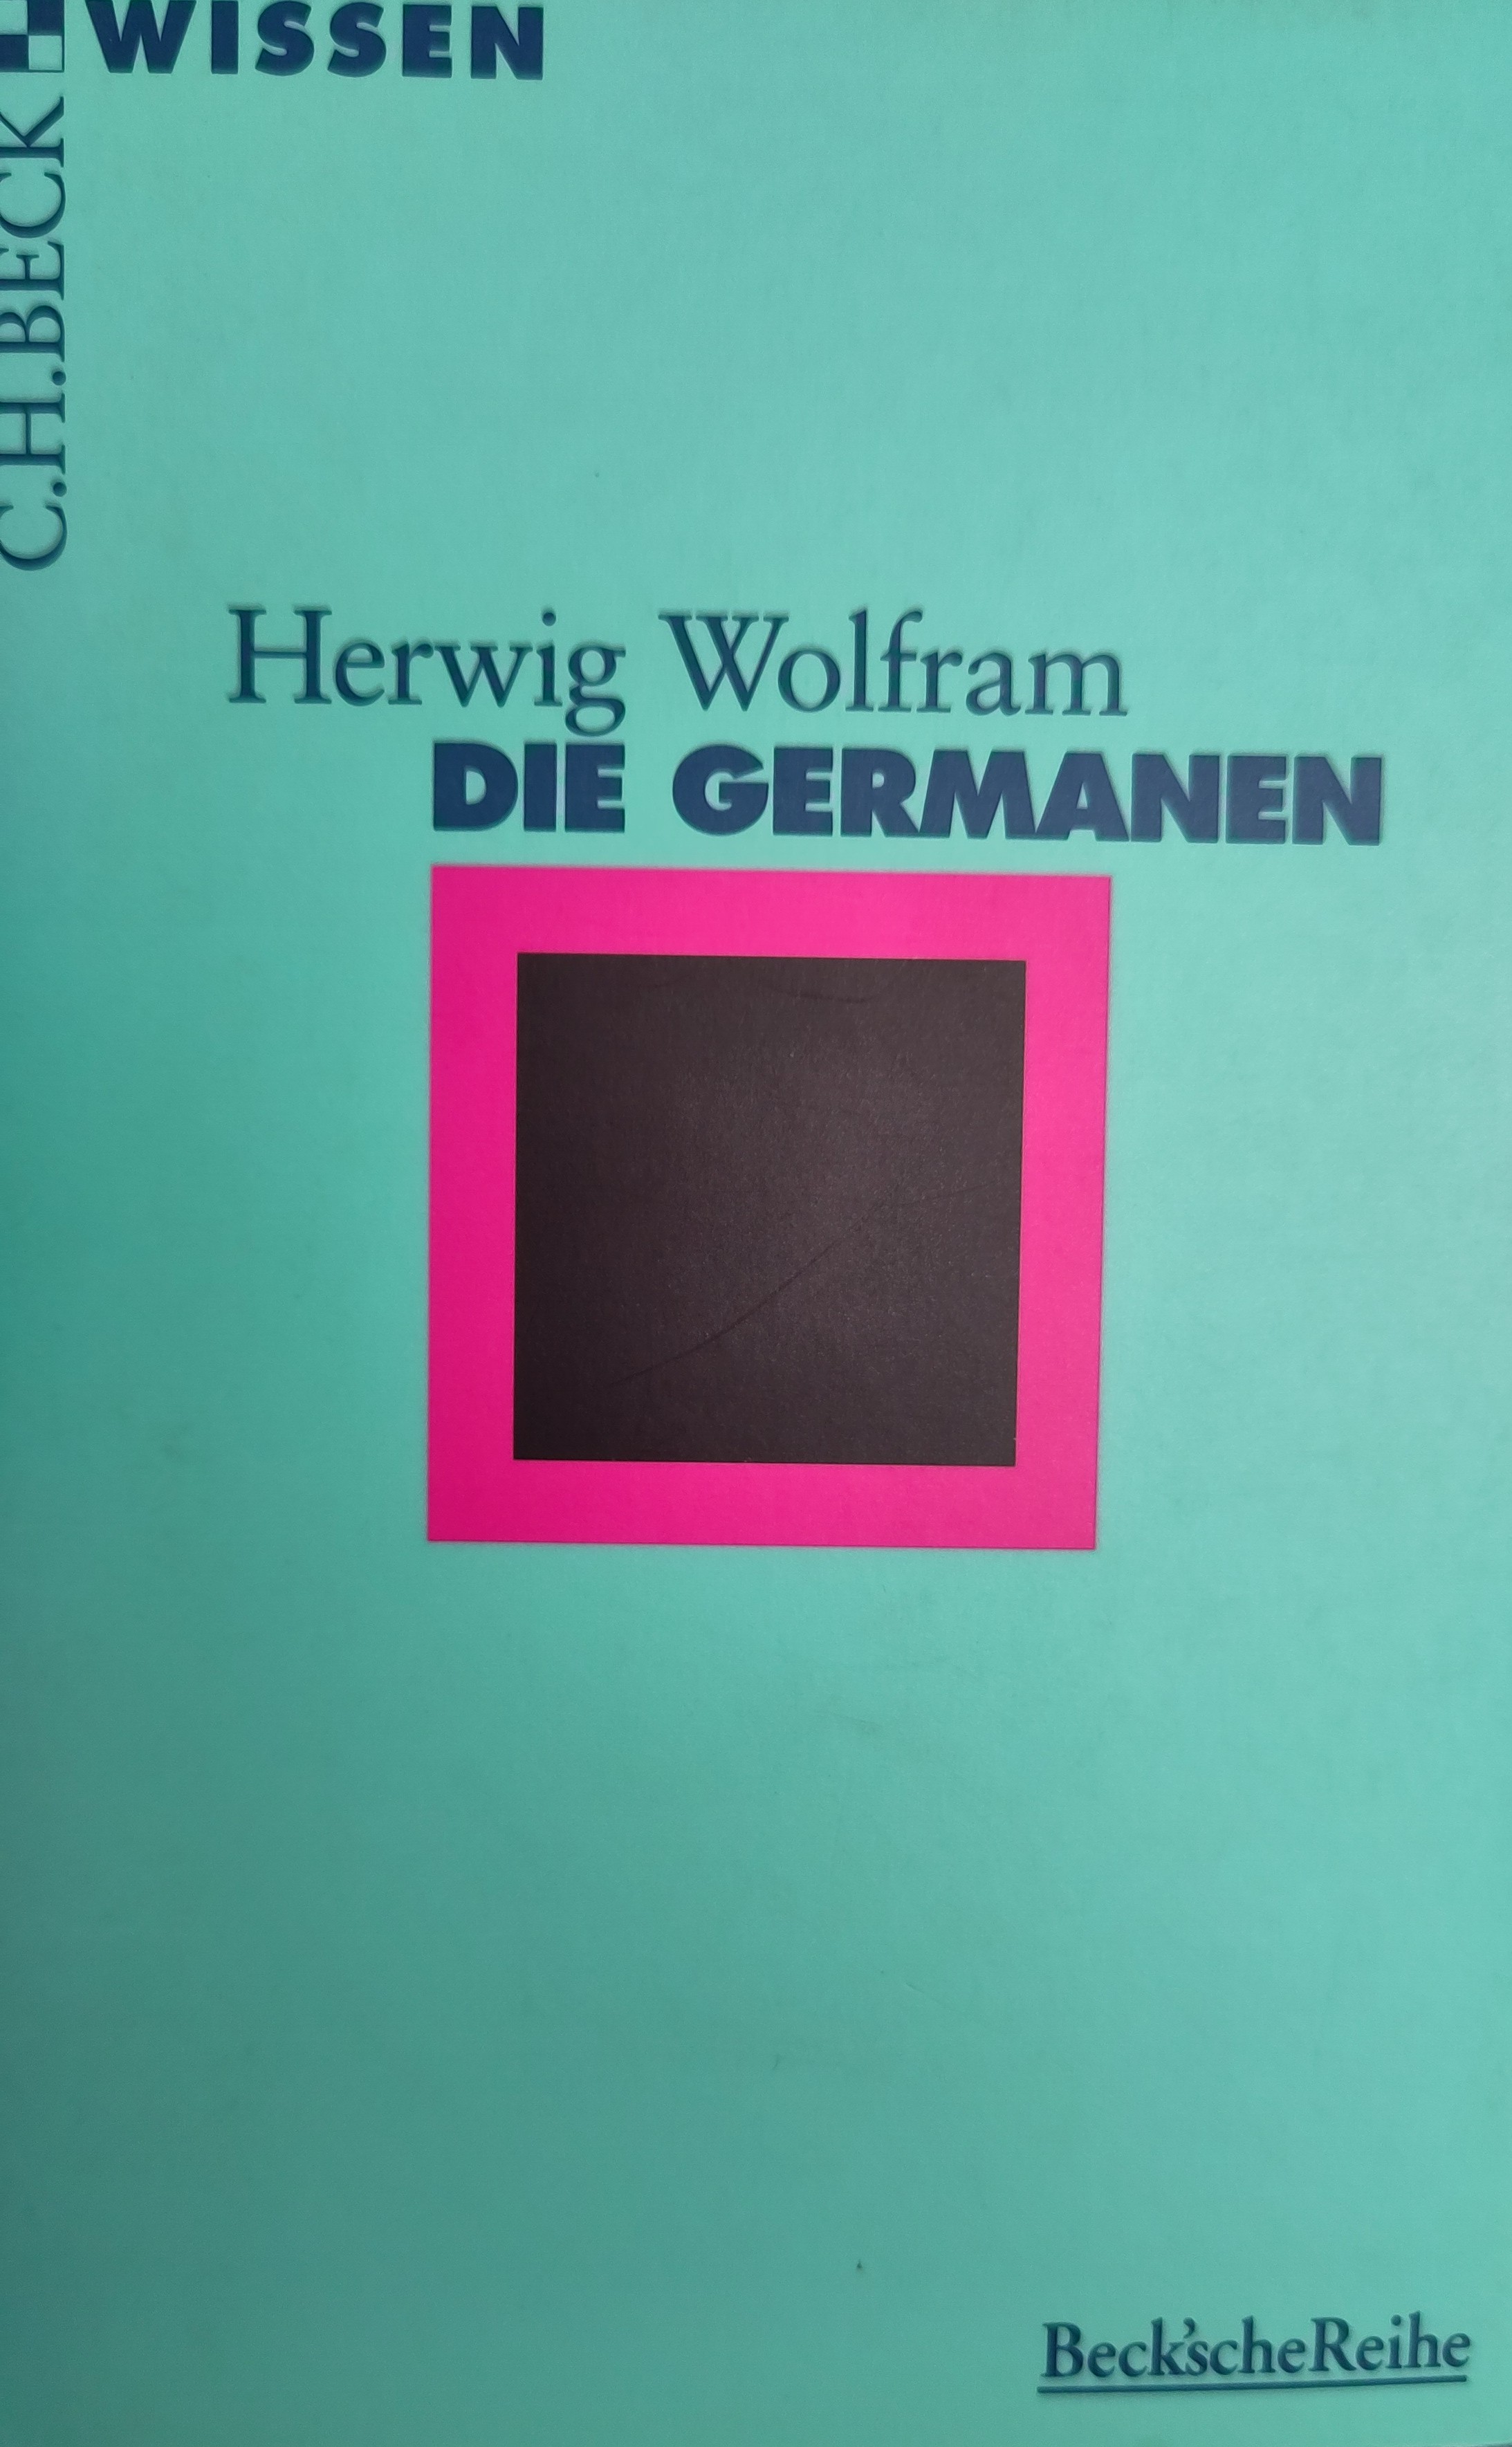 Herwig Wolfram: Die Germanen (Paperback, German language, 1995, Beck)